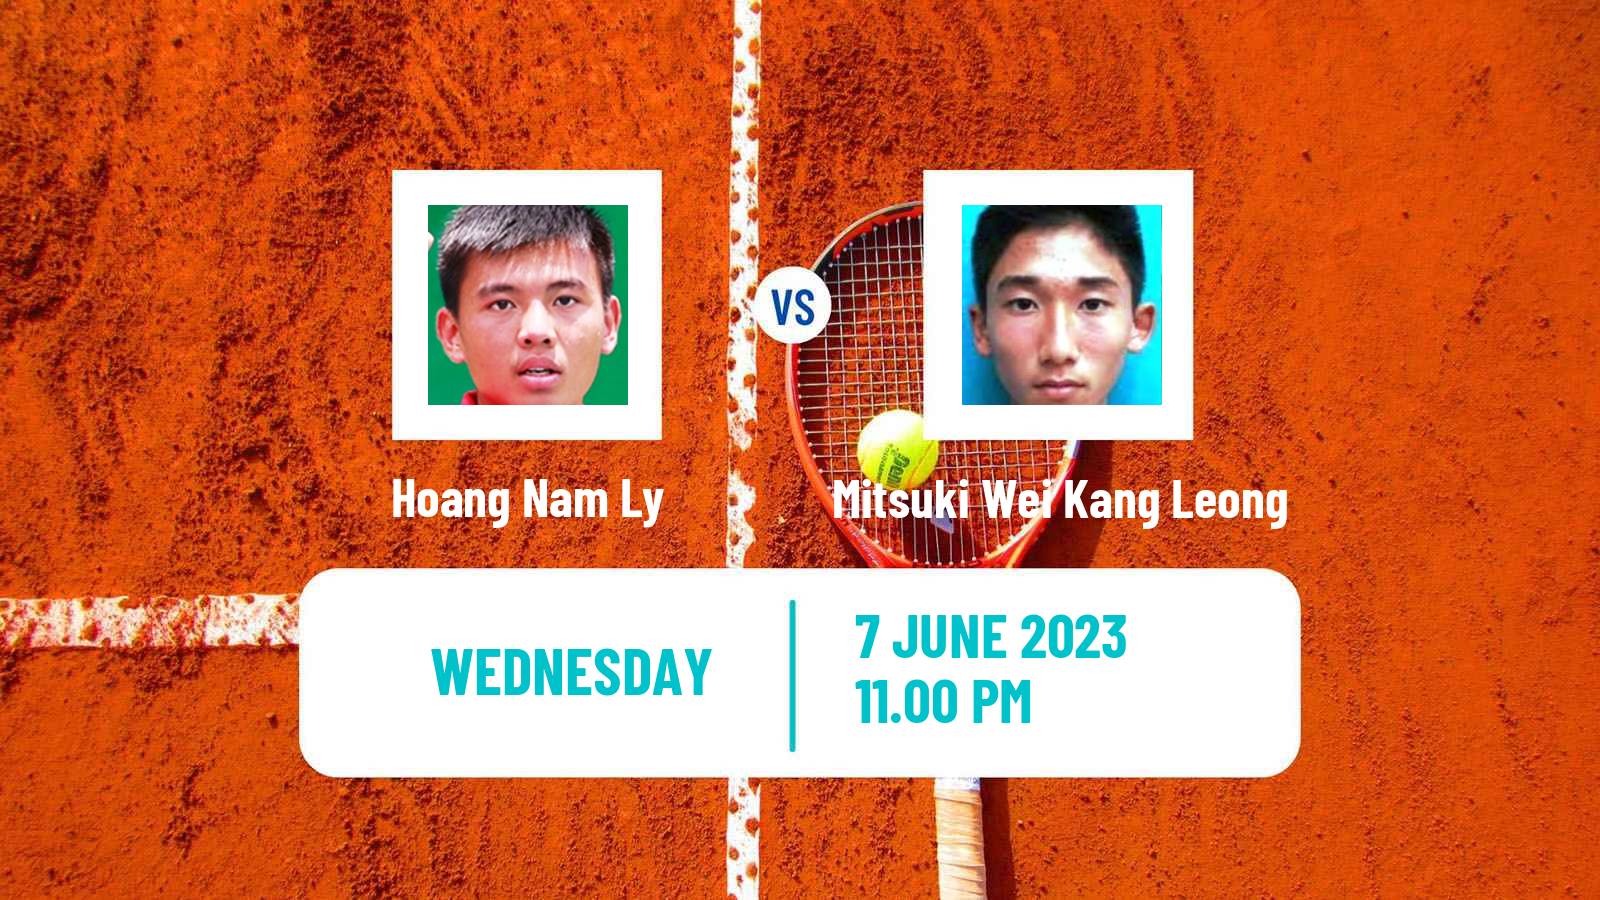 Tennis ITF M25 Jakarta 5 Men Hoang Nam Ly - Mitsuki Wei Kang Leong